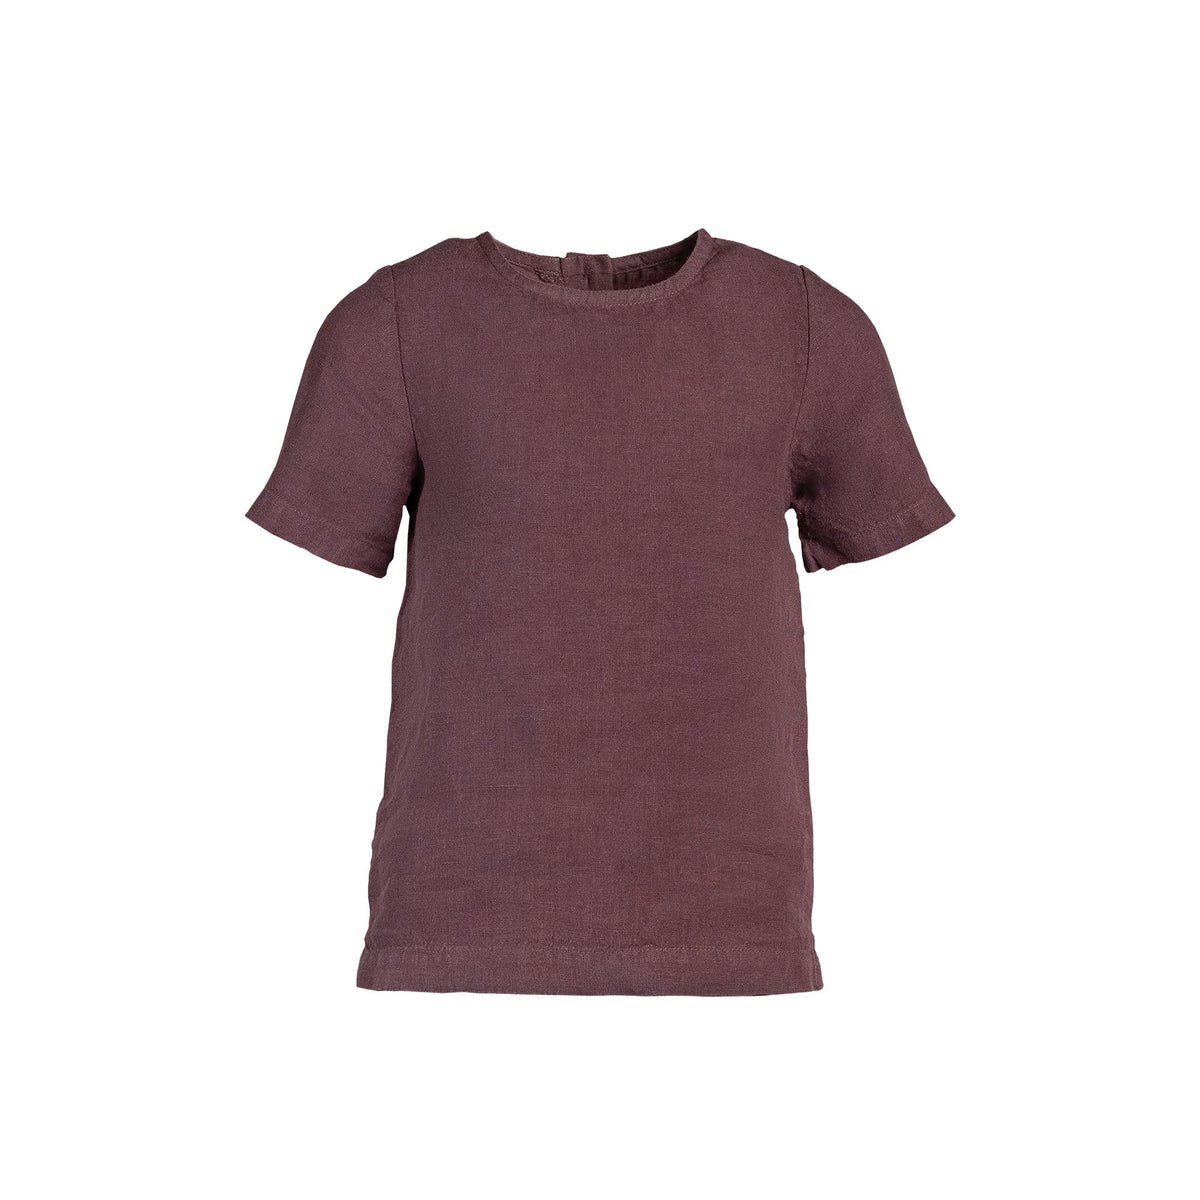 MENIQUE 100% Linen T-Shirt Top Emma